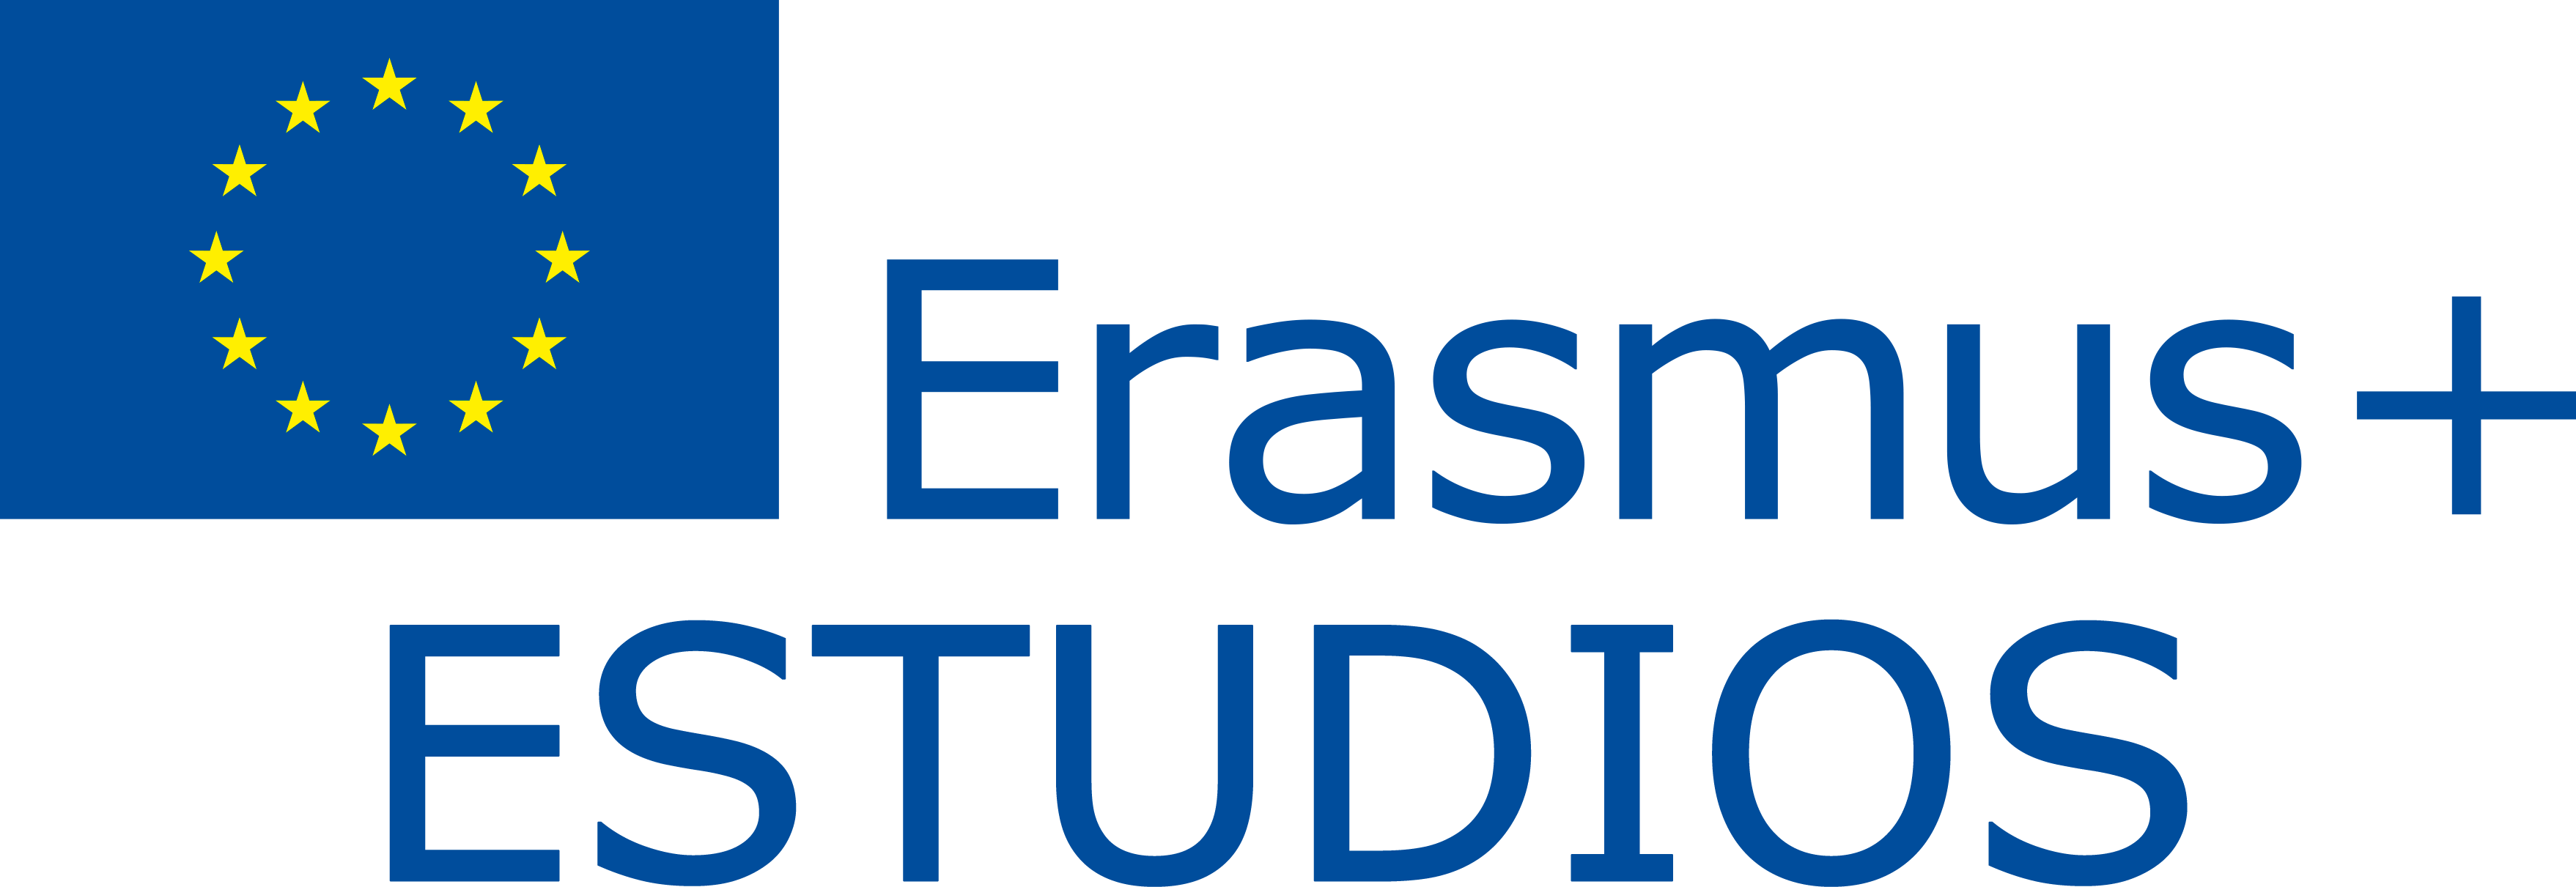 Abierta la convocatoria Erasmus+ Estudios para el curso 2021/22